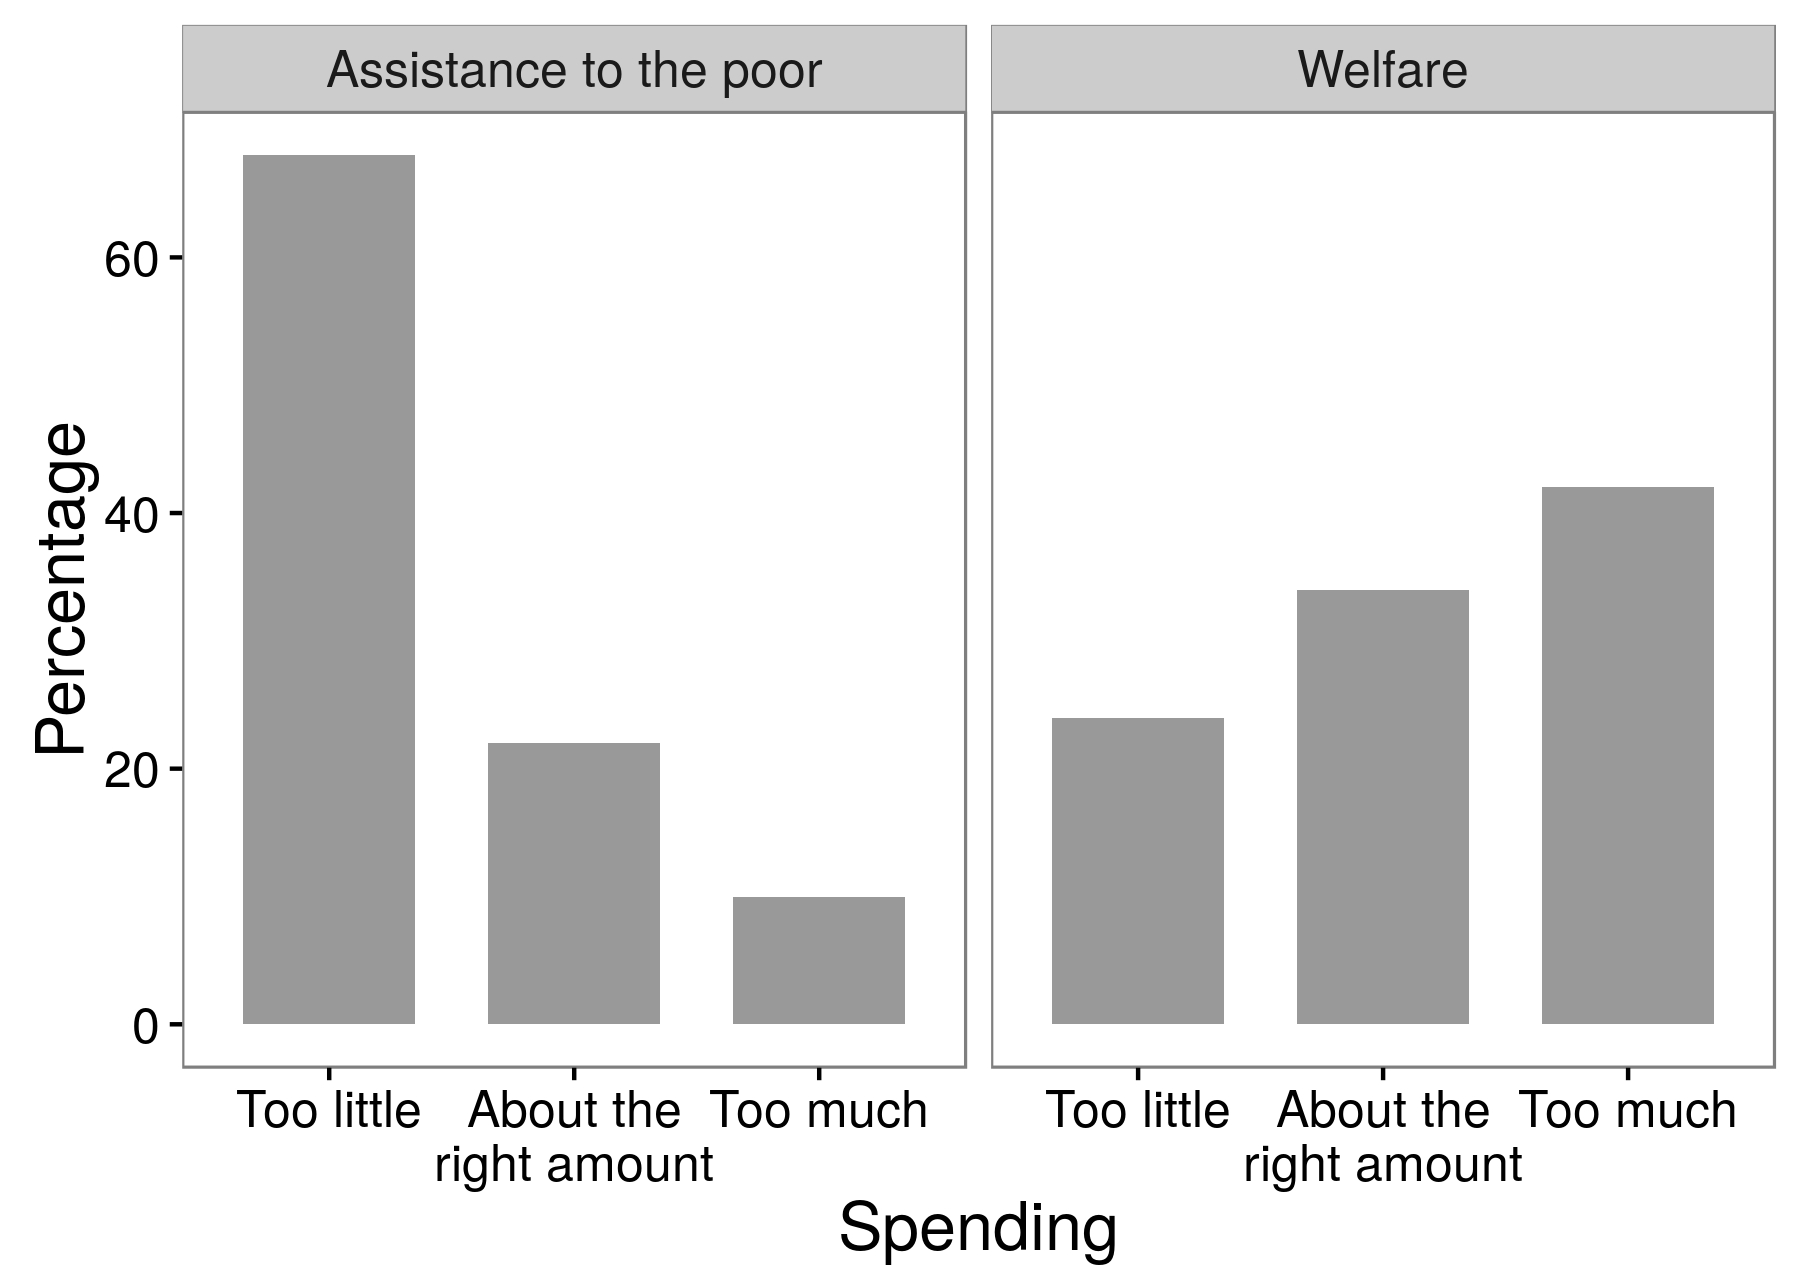 圖3.4：調查實驗的結果顯示受訪者更多地支持對窮人的援助而不是福利。這是問題措辭效果的一個例子，研究人員得到的答案取決於他們在問題中使用的確切詞語。改編自Huber和Paris（2013），表A1。